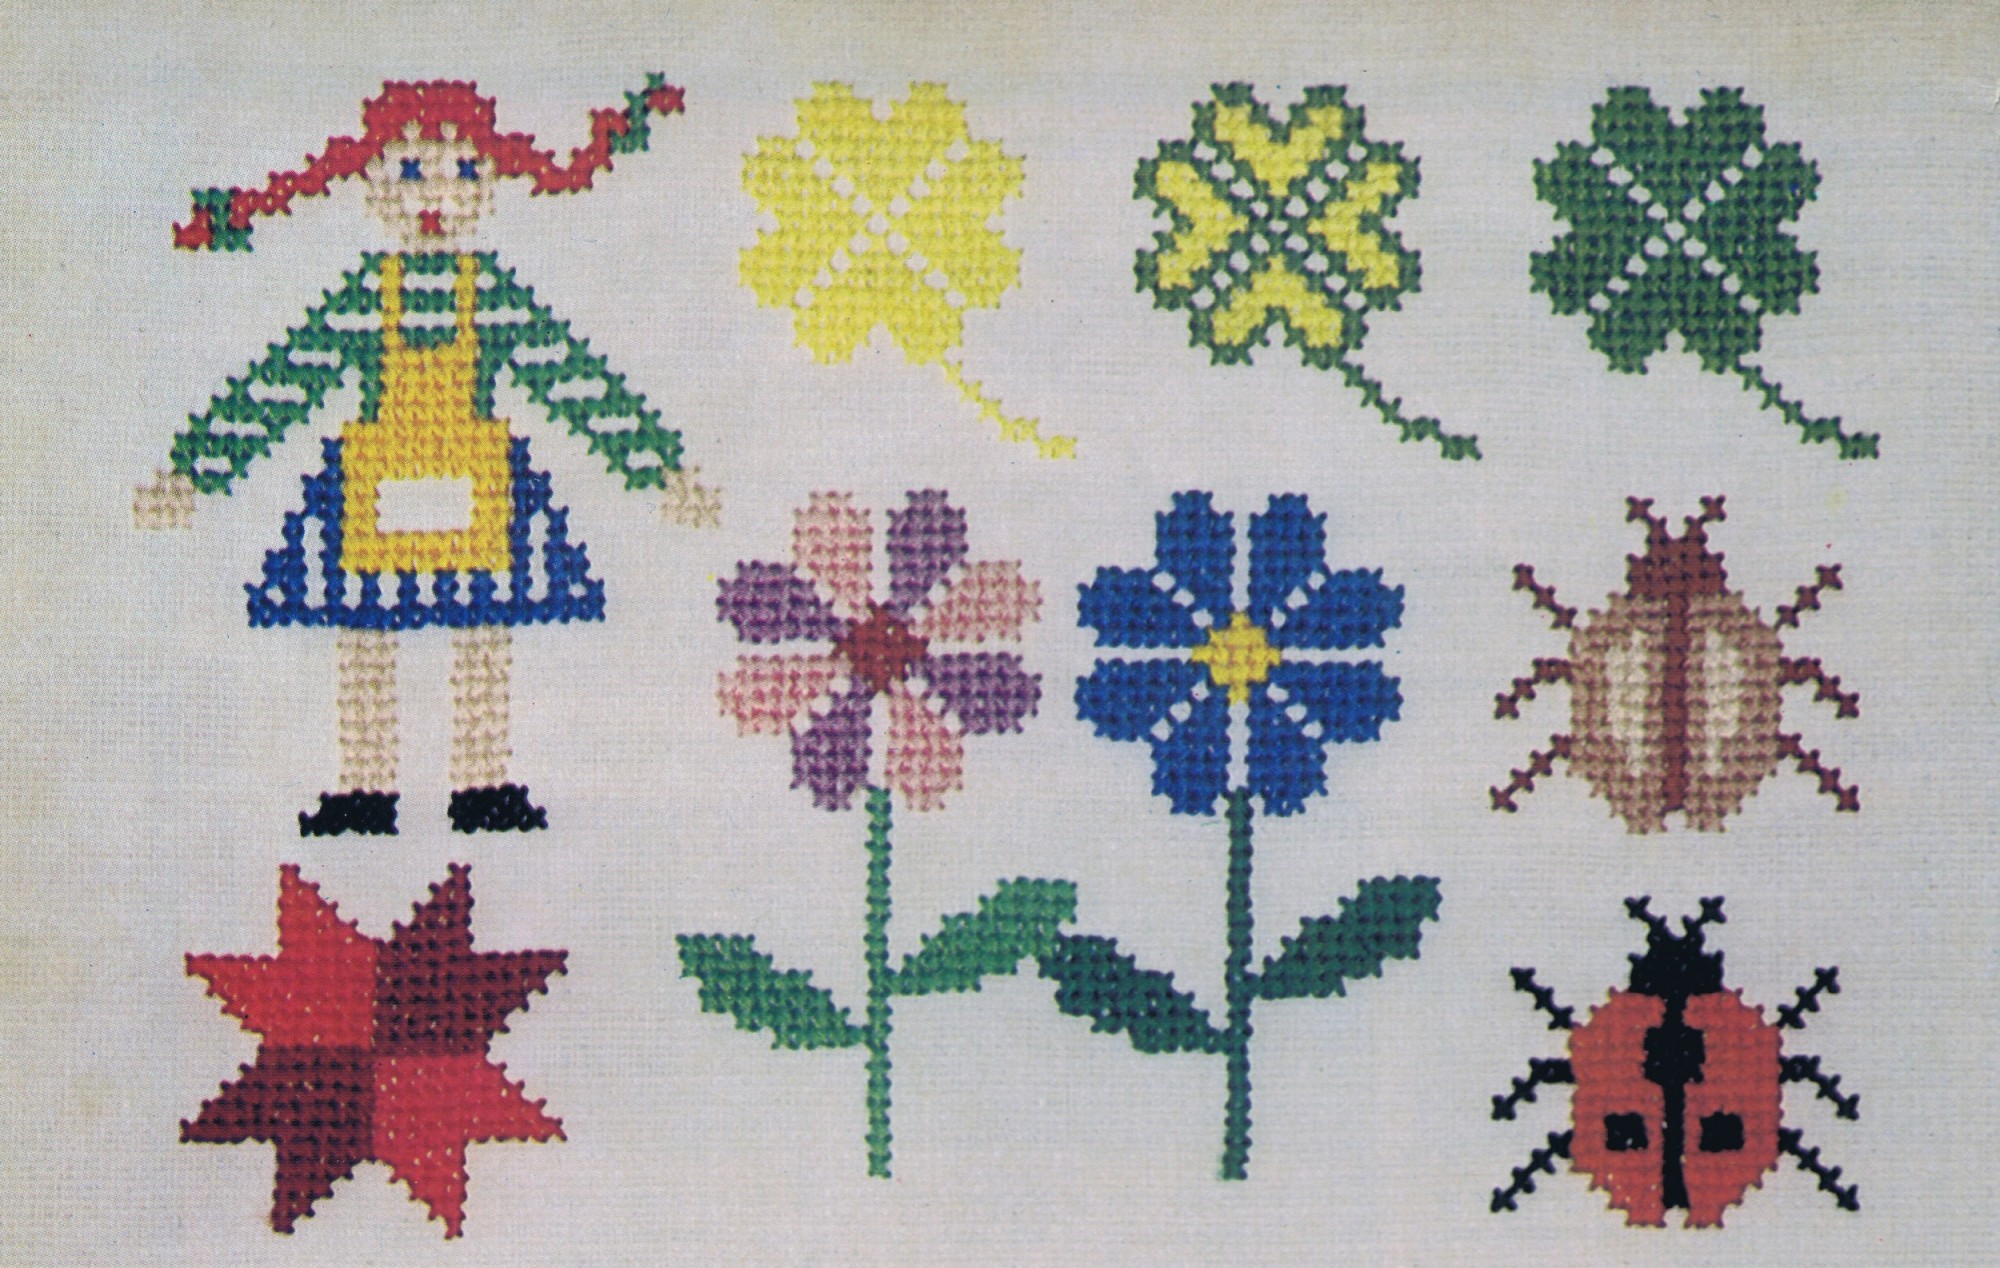 Embroidery Magic cross stitch motif patterns